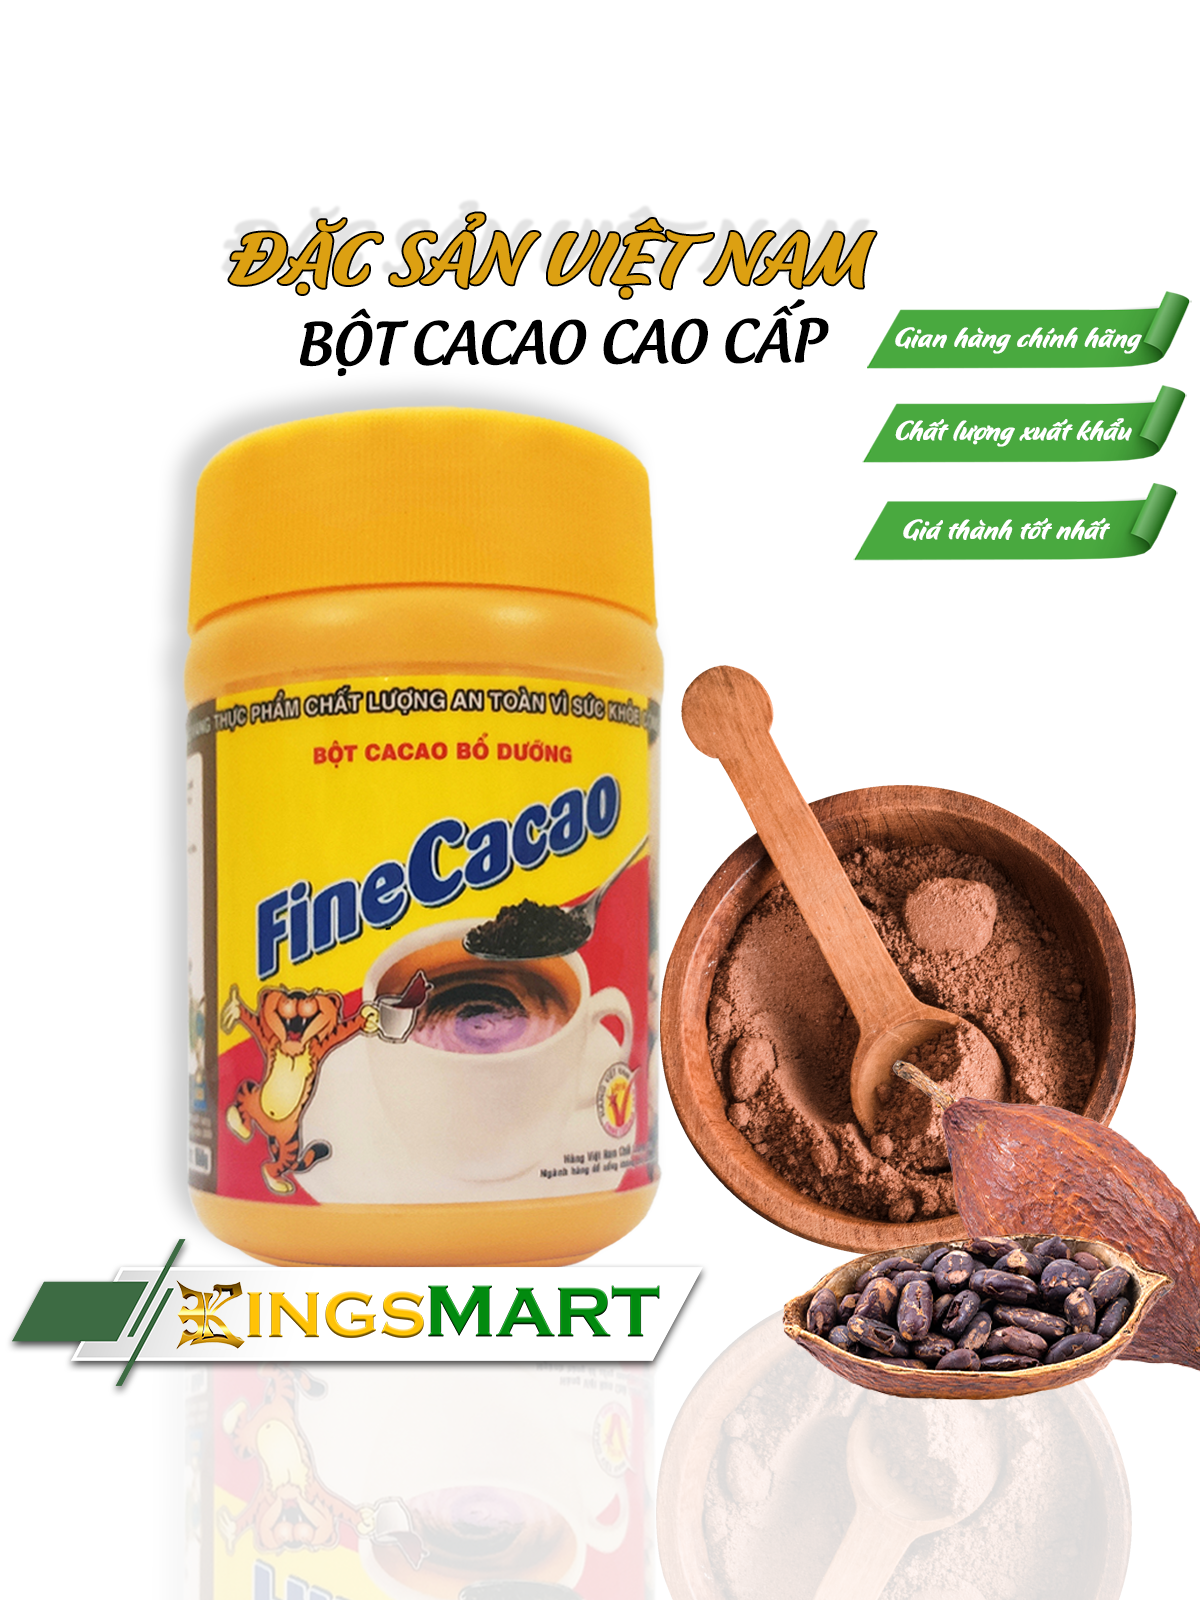 Bột cacao Fine 150g - Thương hiệu TIẾN PHÁT - Đặc sản Quy Nhơn - Hũ 150g - Kingsmart